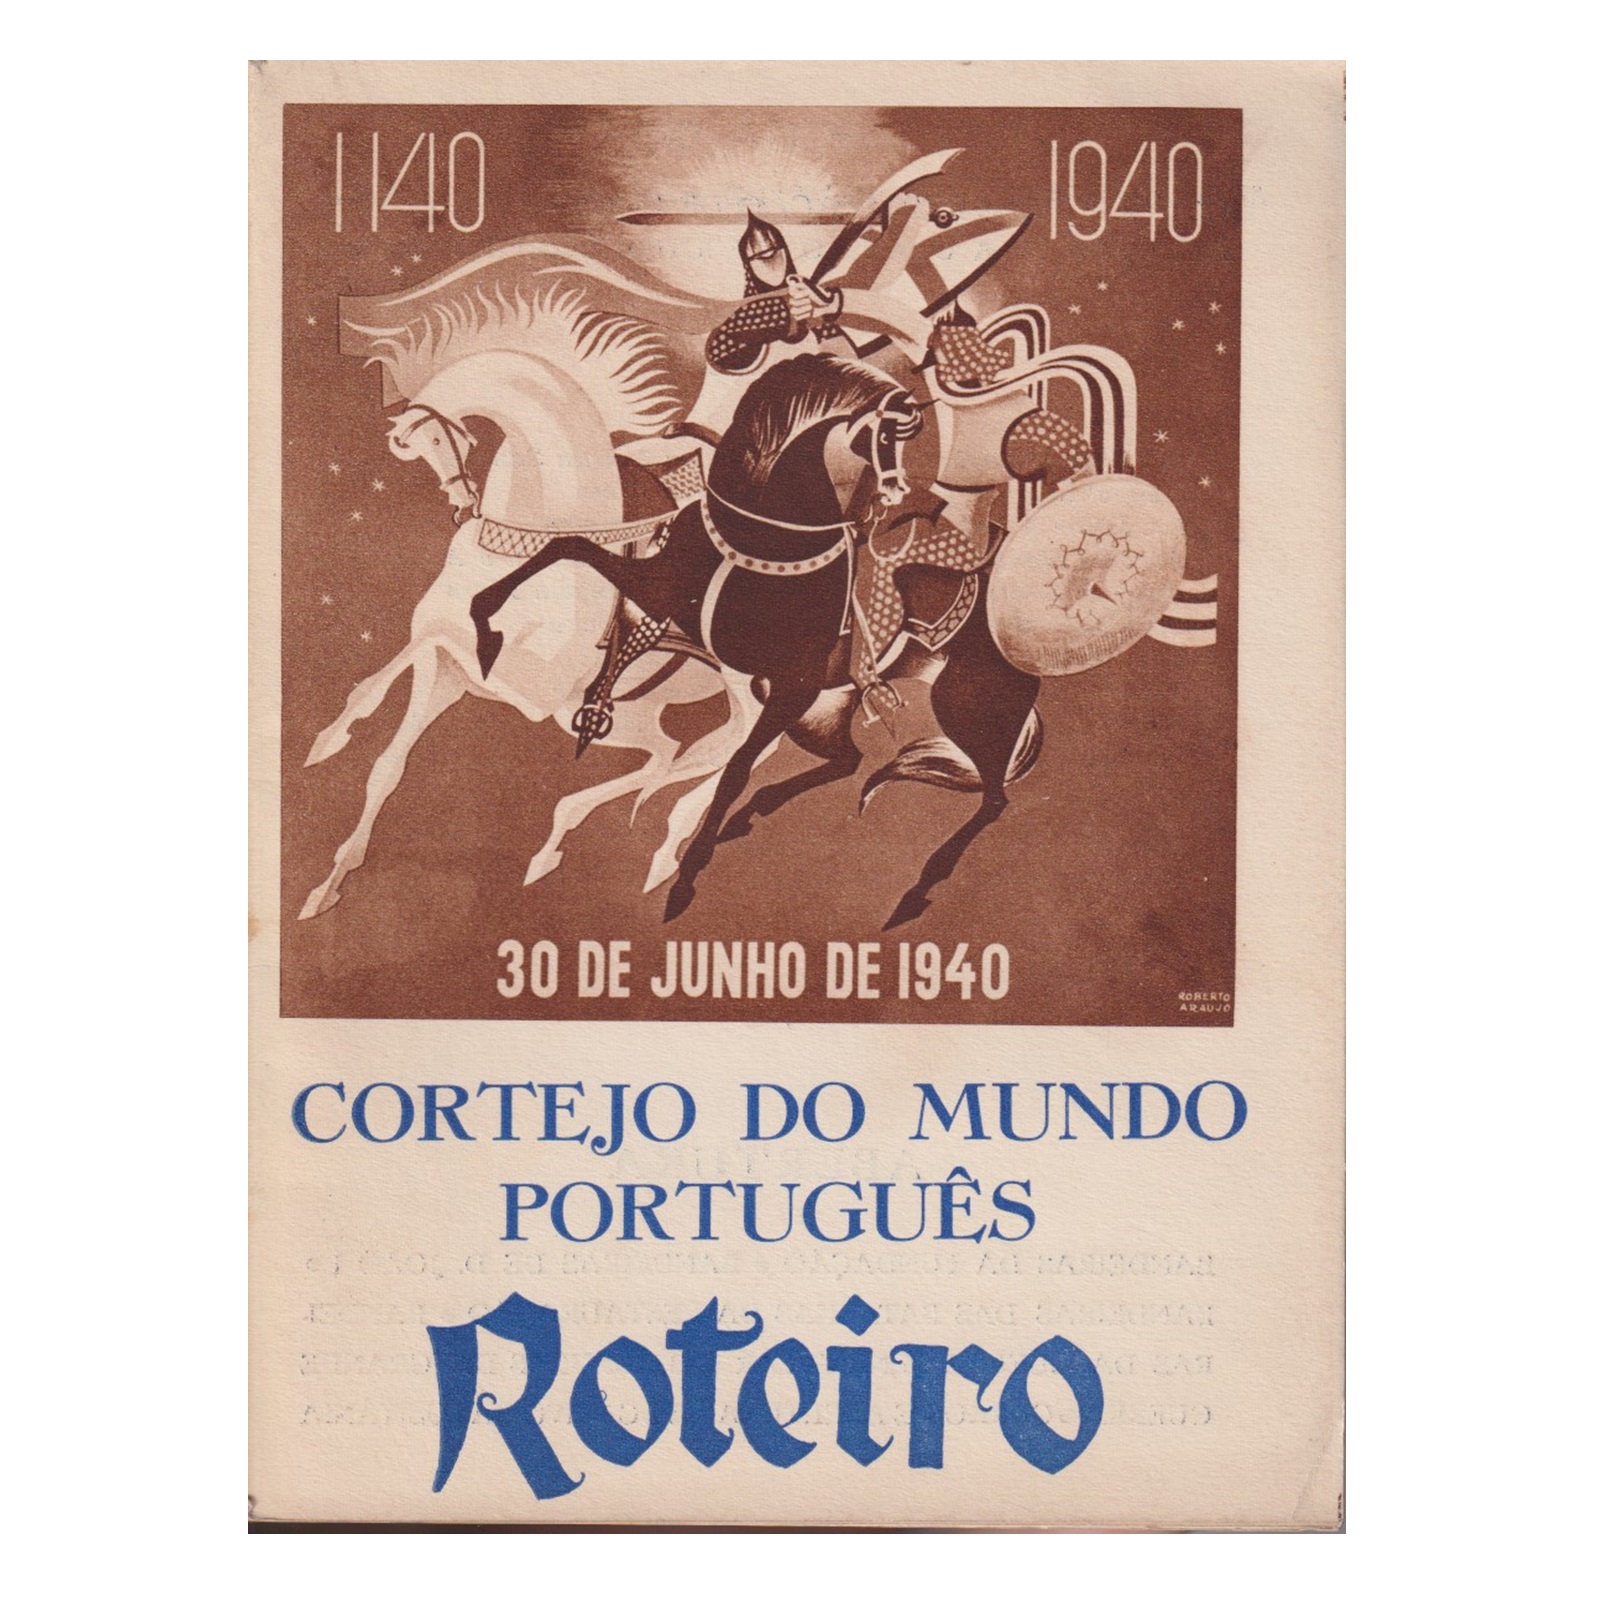 CORTEJO DO MUNDO PORTUGUÊS: ROTEIRO. 